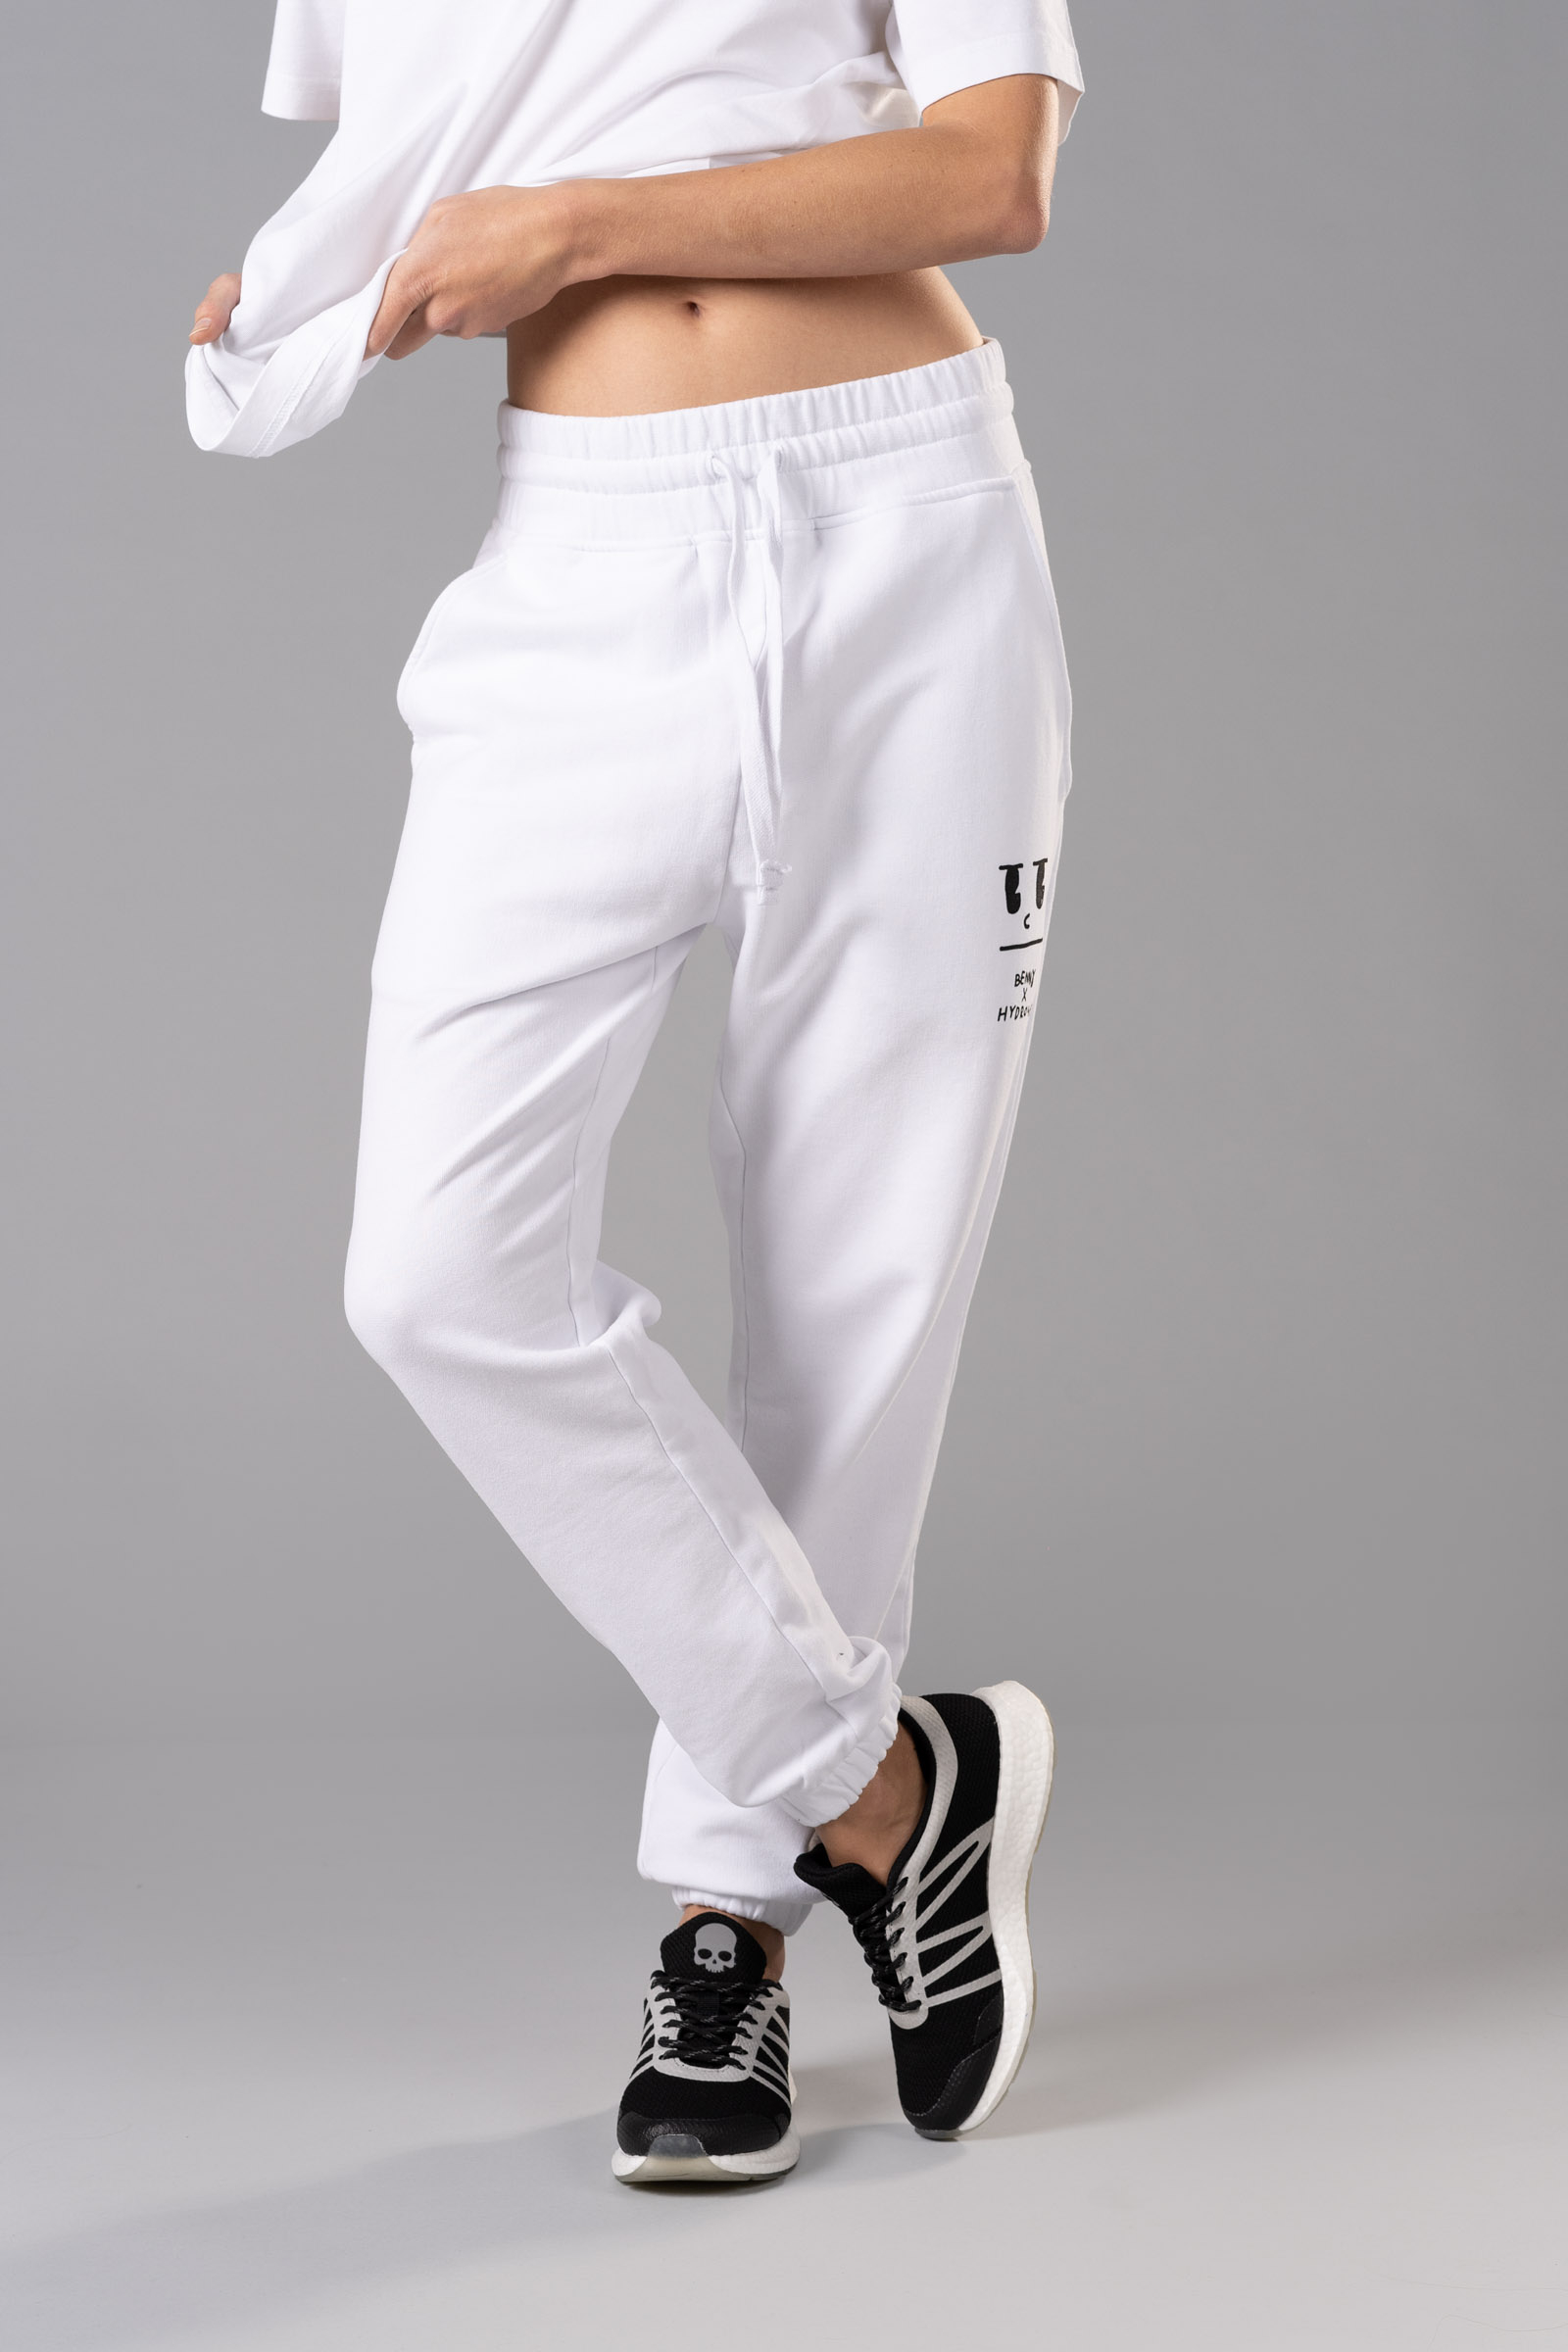 BENNY SWEATPANTS - WHITE - Hydrogen - Luxury Sportwear